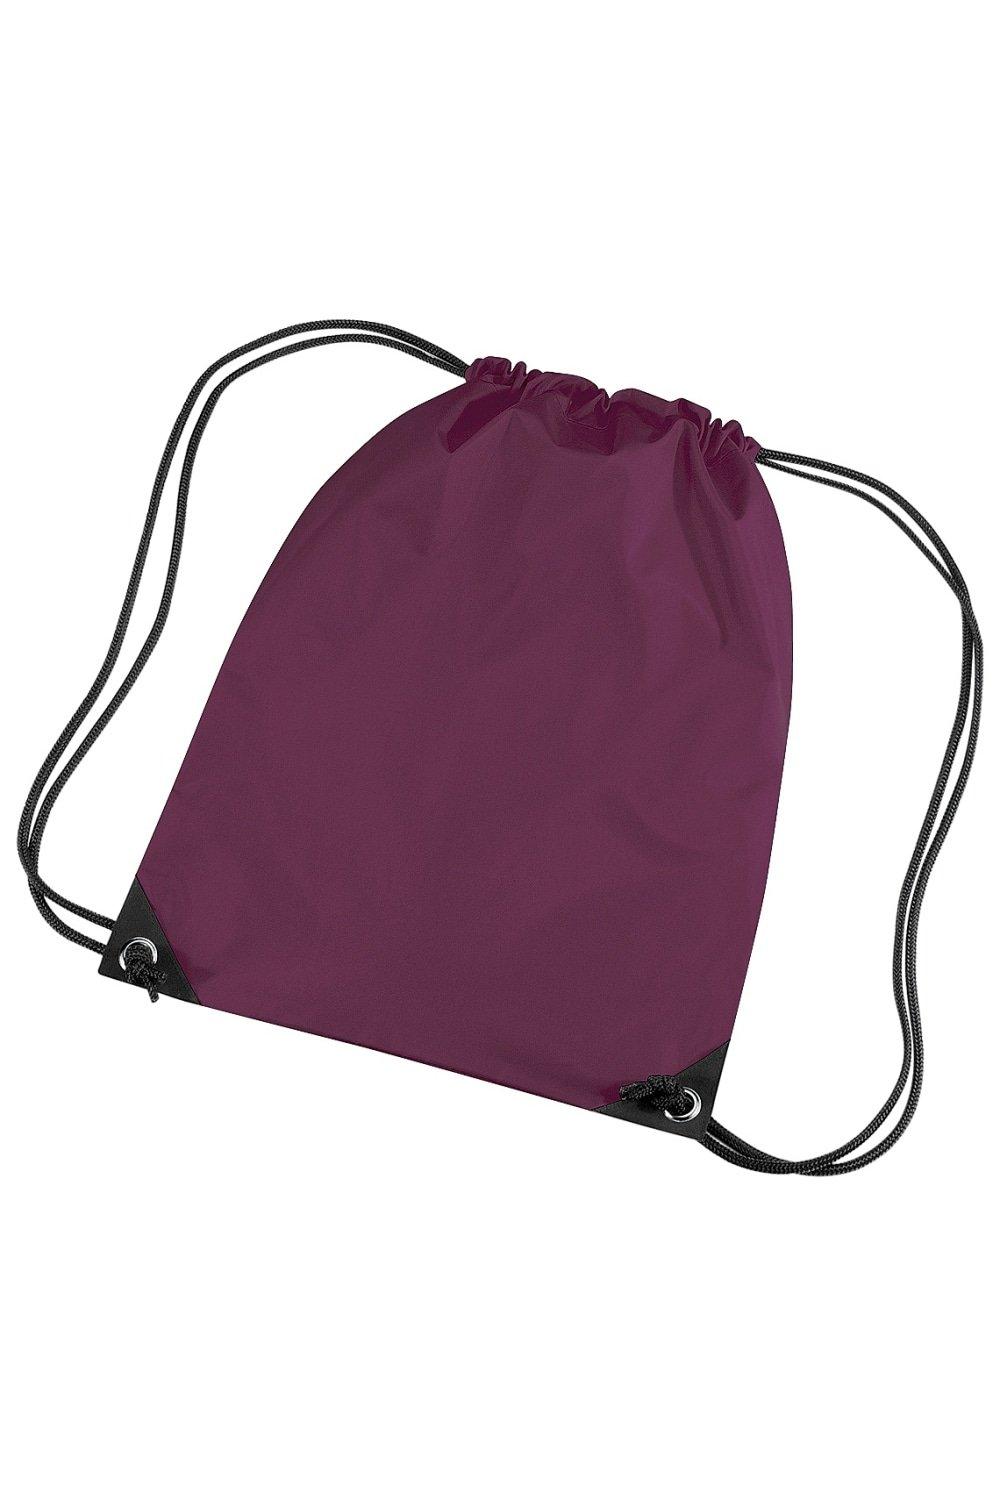 Водонепроницаемая сумка Gymsac премиум-класса (11 литров) (2 шт. в упаковке) Bagbase, красный